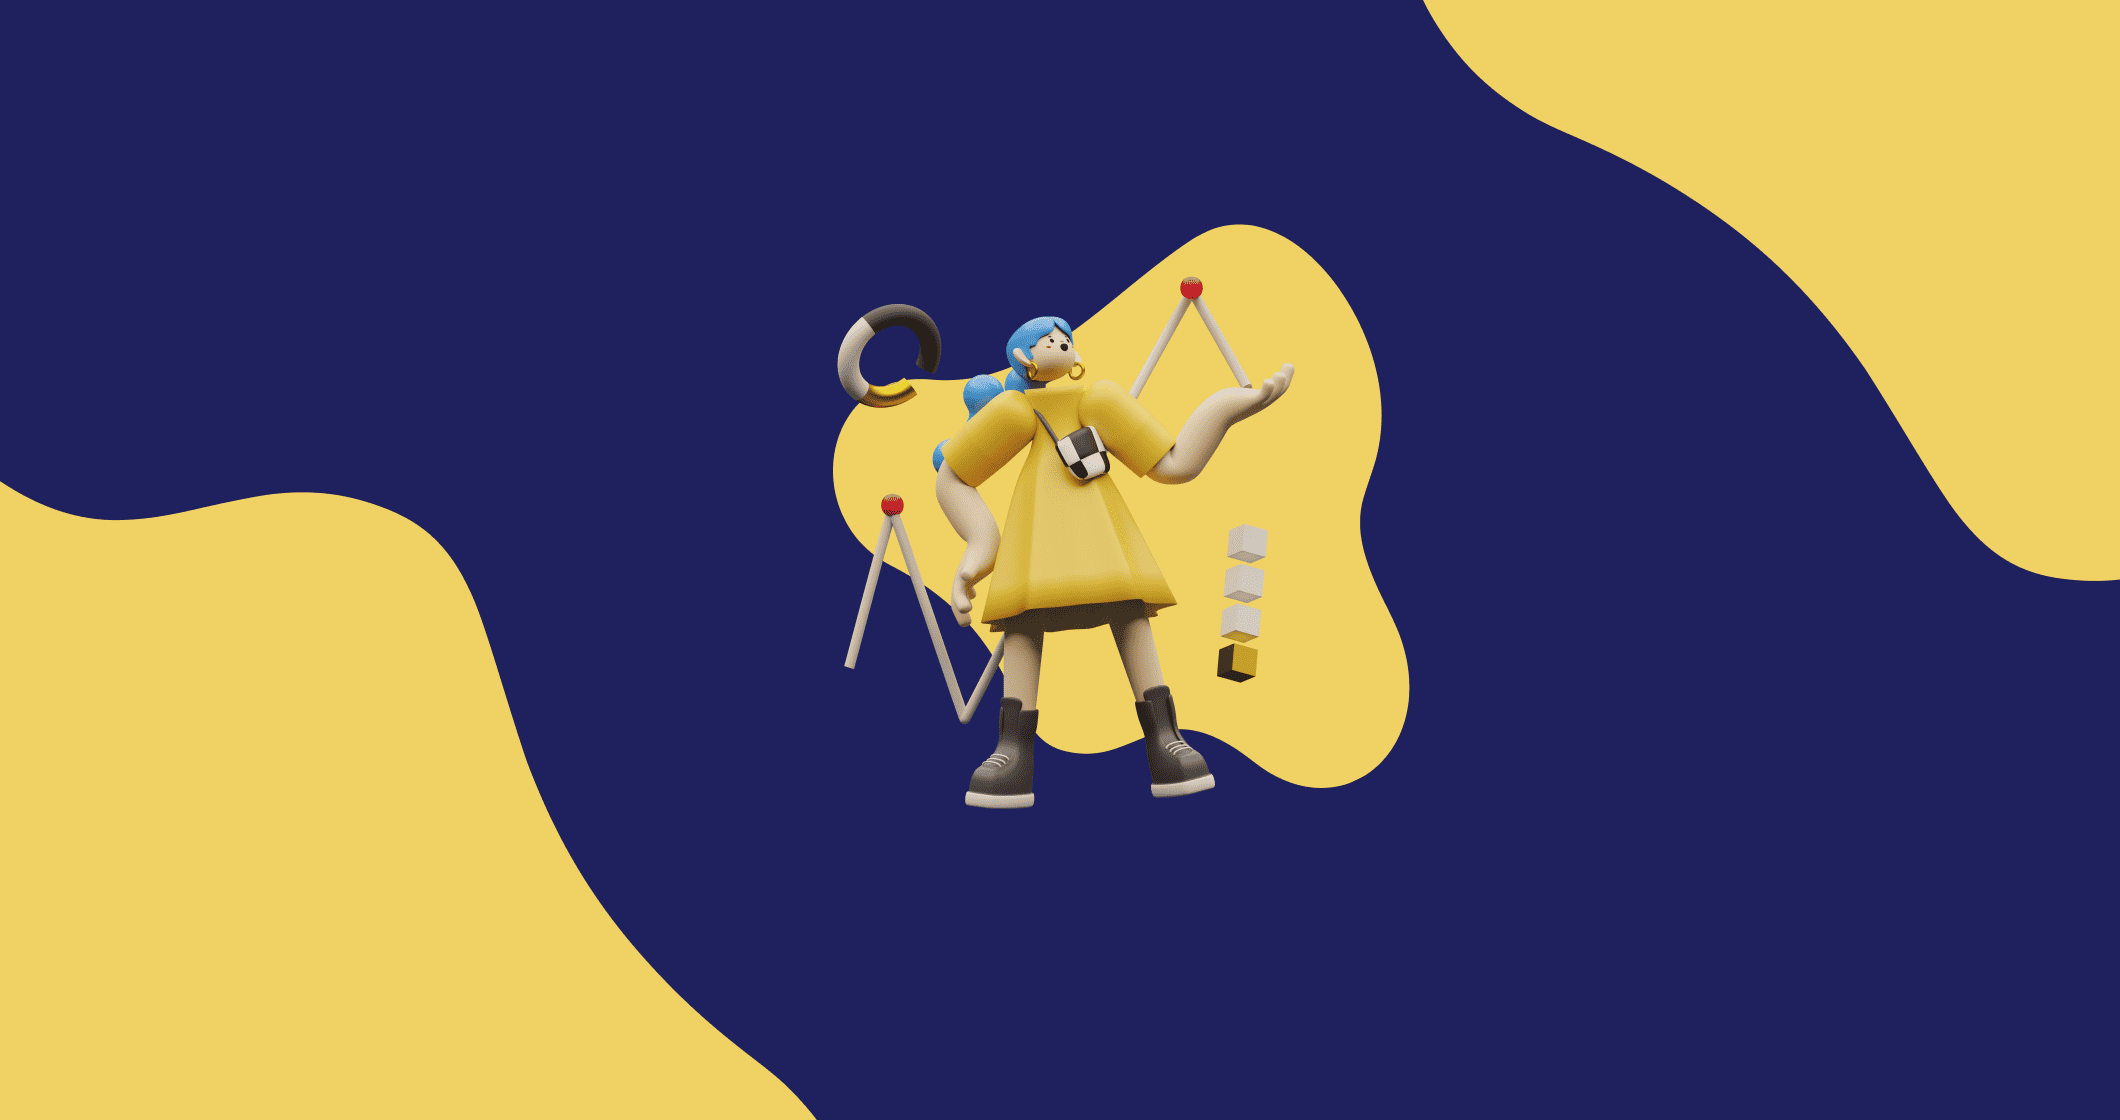 Fundo amarelo e azul com uma pessoa com vestido amarelo, inspirado na arte do grafico de gantt.